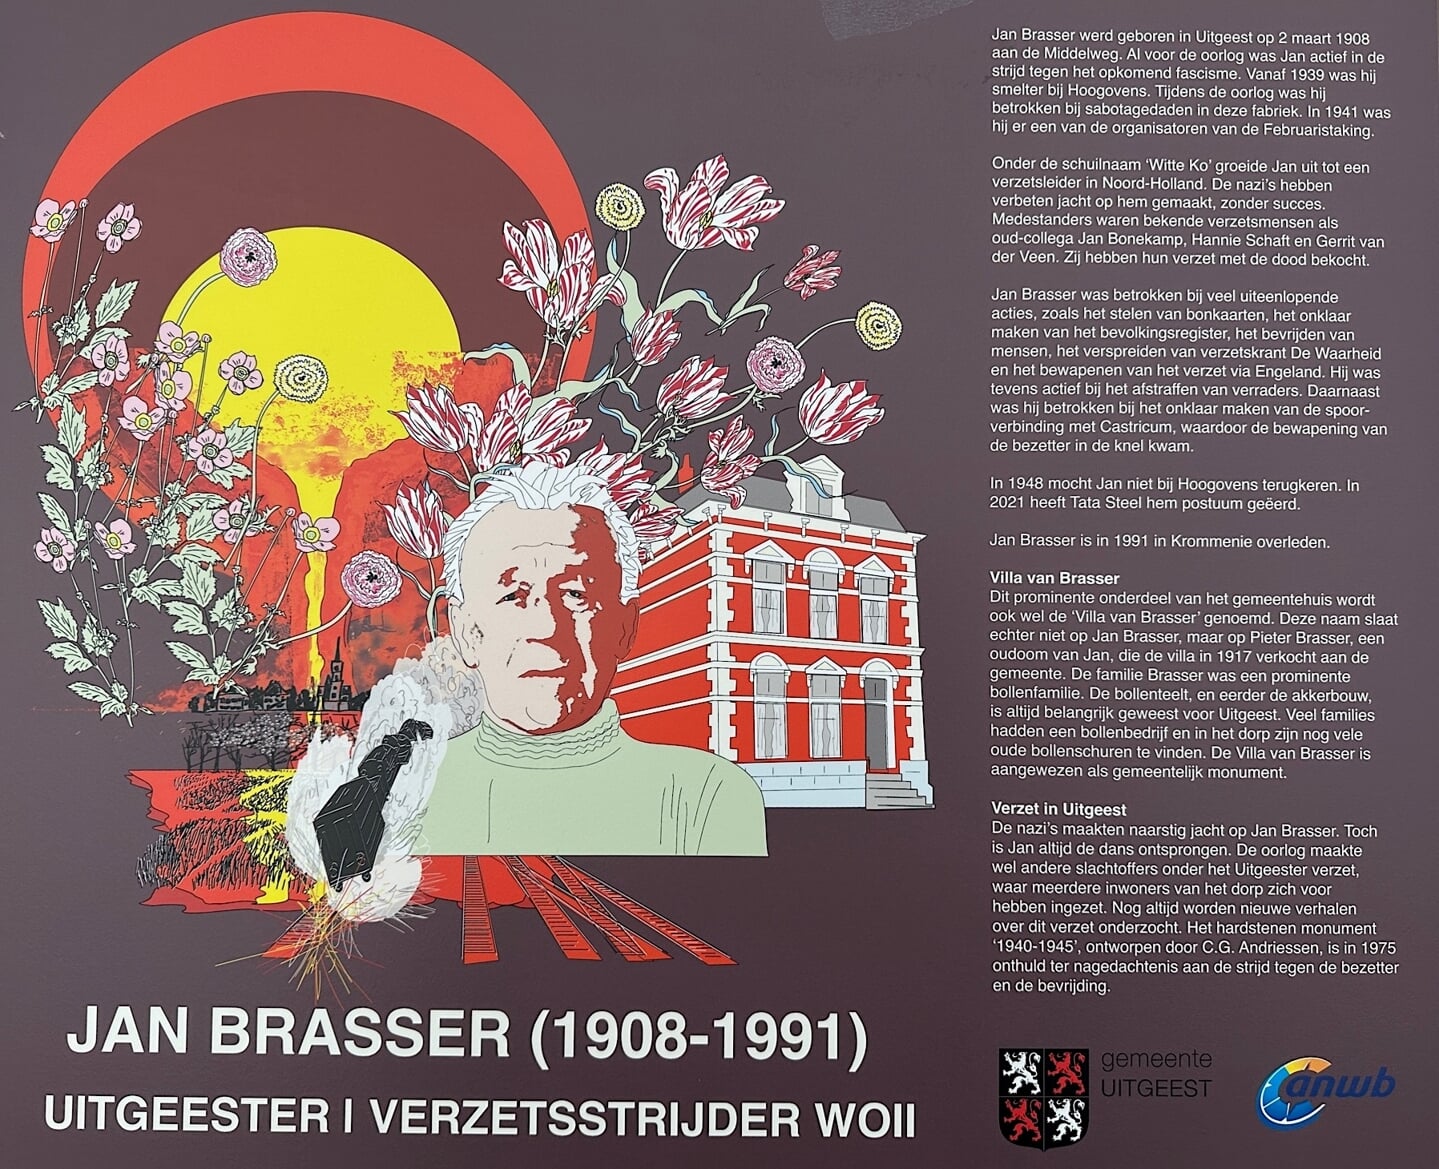 Plaquette ter nagedachtenis aan verzetsstrijder Jan Brasser.